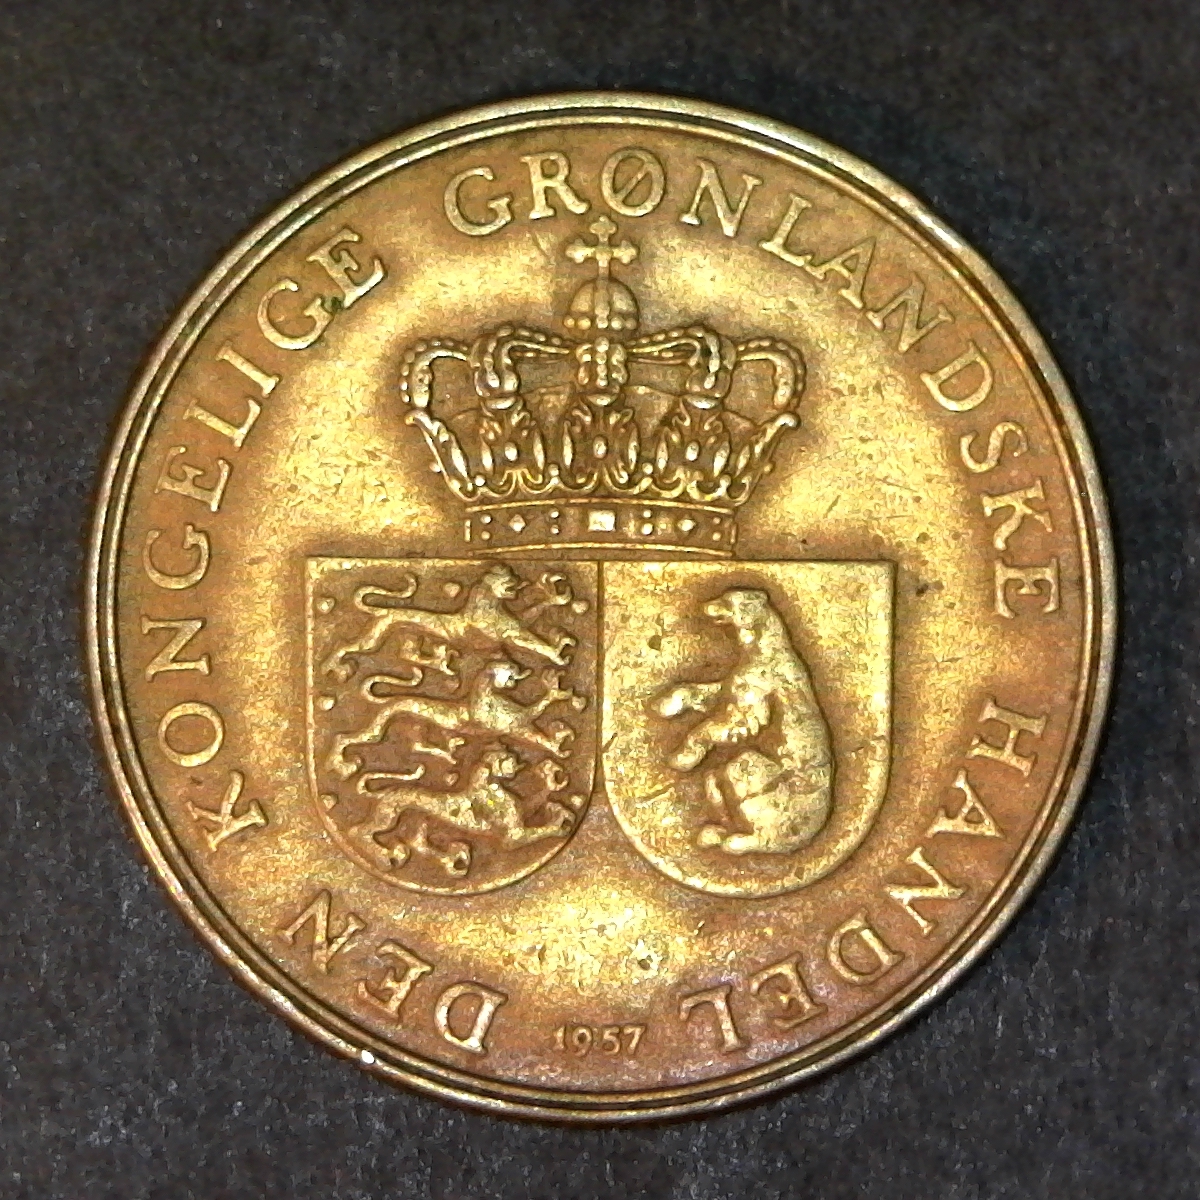 greenland 1 Krone 1957 obv.jpg